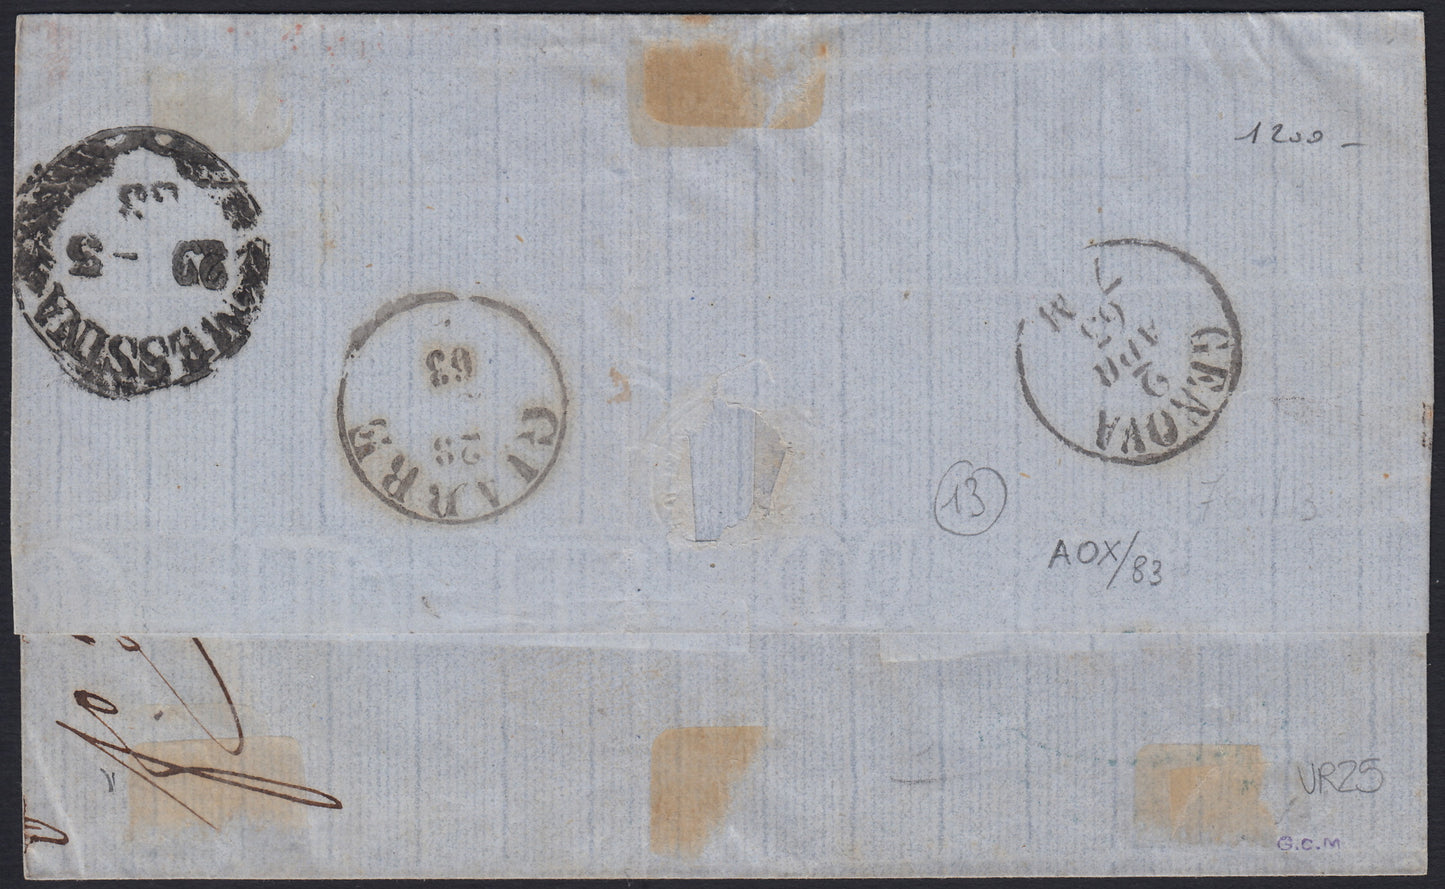 SardSP302 - 1863 - IV emissione c. 40 rosa carminio tiratura 1862 su lettera da Riposto per Genova 28/3/63 con i Piroscafi Postali Francesi (16E).